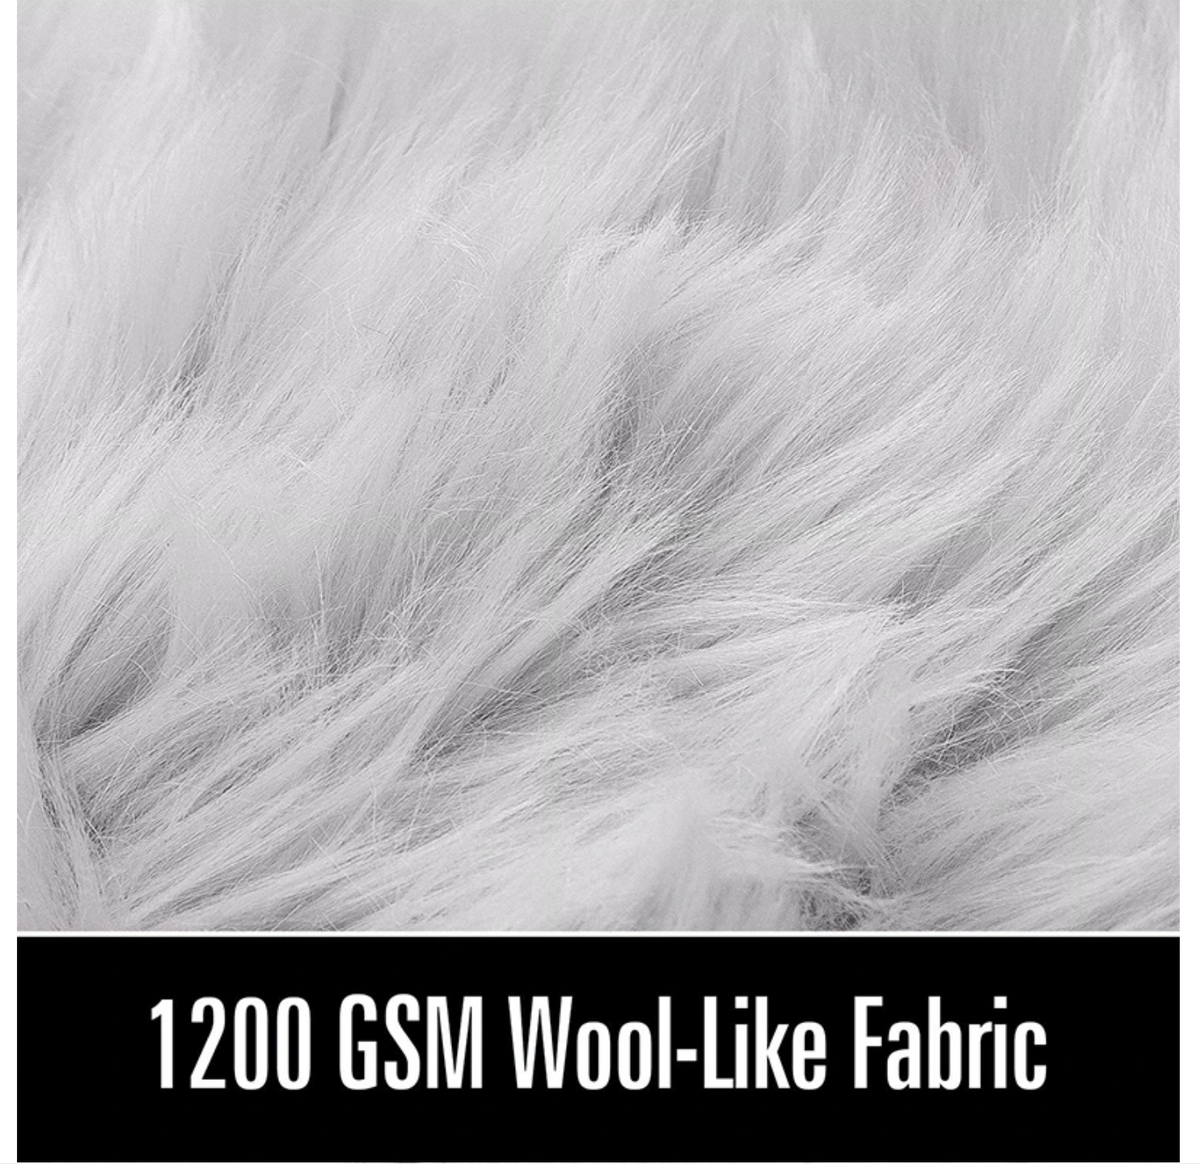 Fluffy Faux Fur Sheepskin Rug